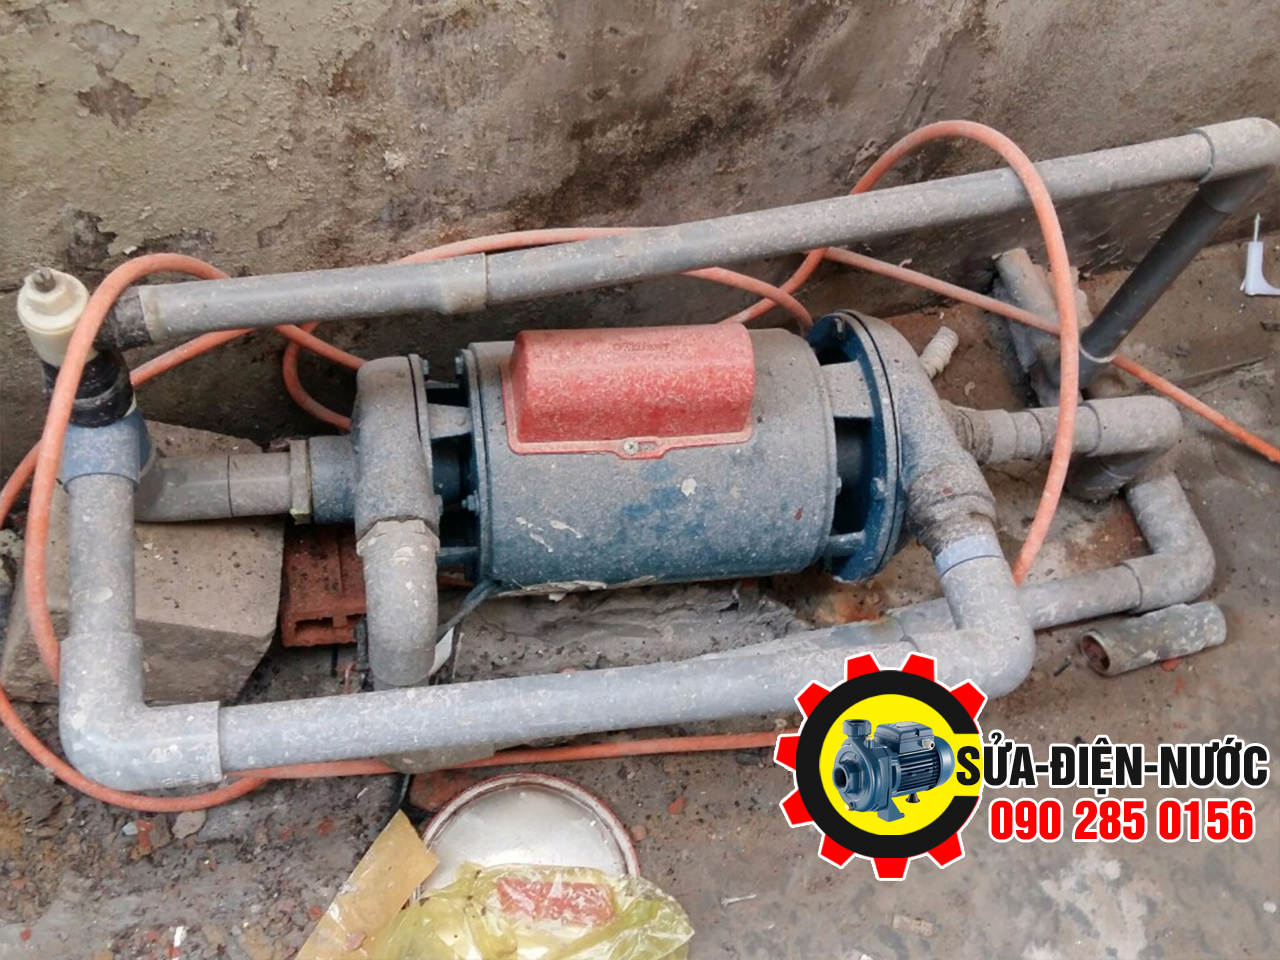 Sửa máy bơm nước tại nhà quận Bình Tân phục vụ tận nơi 24/7